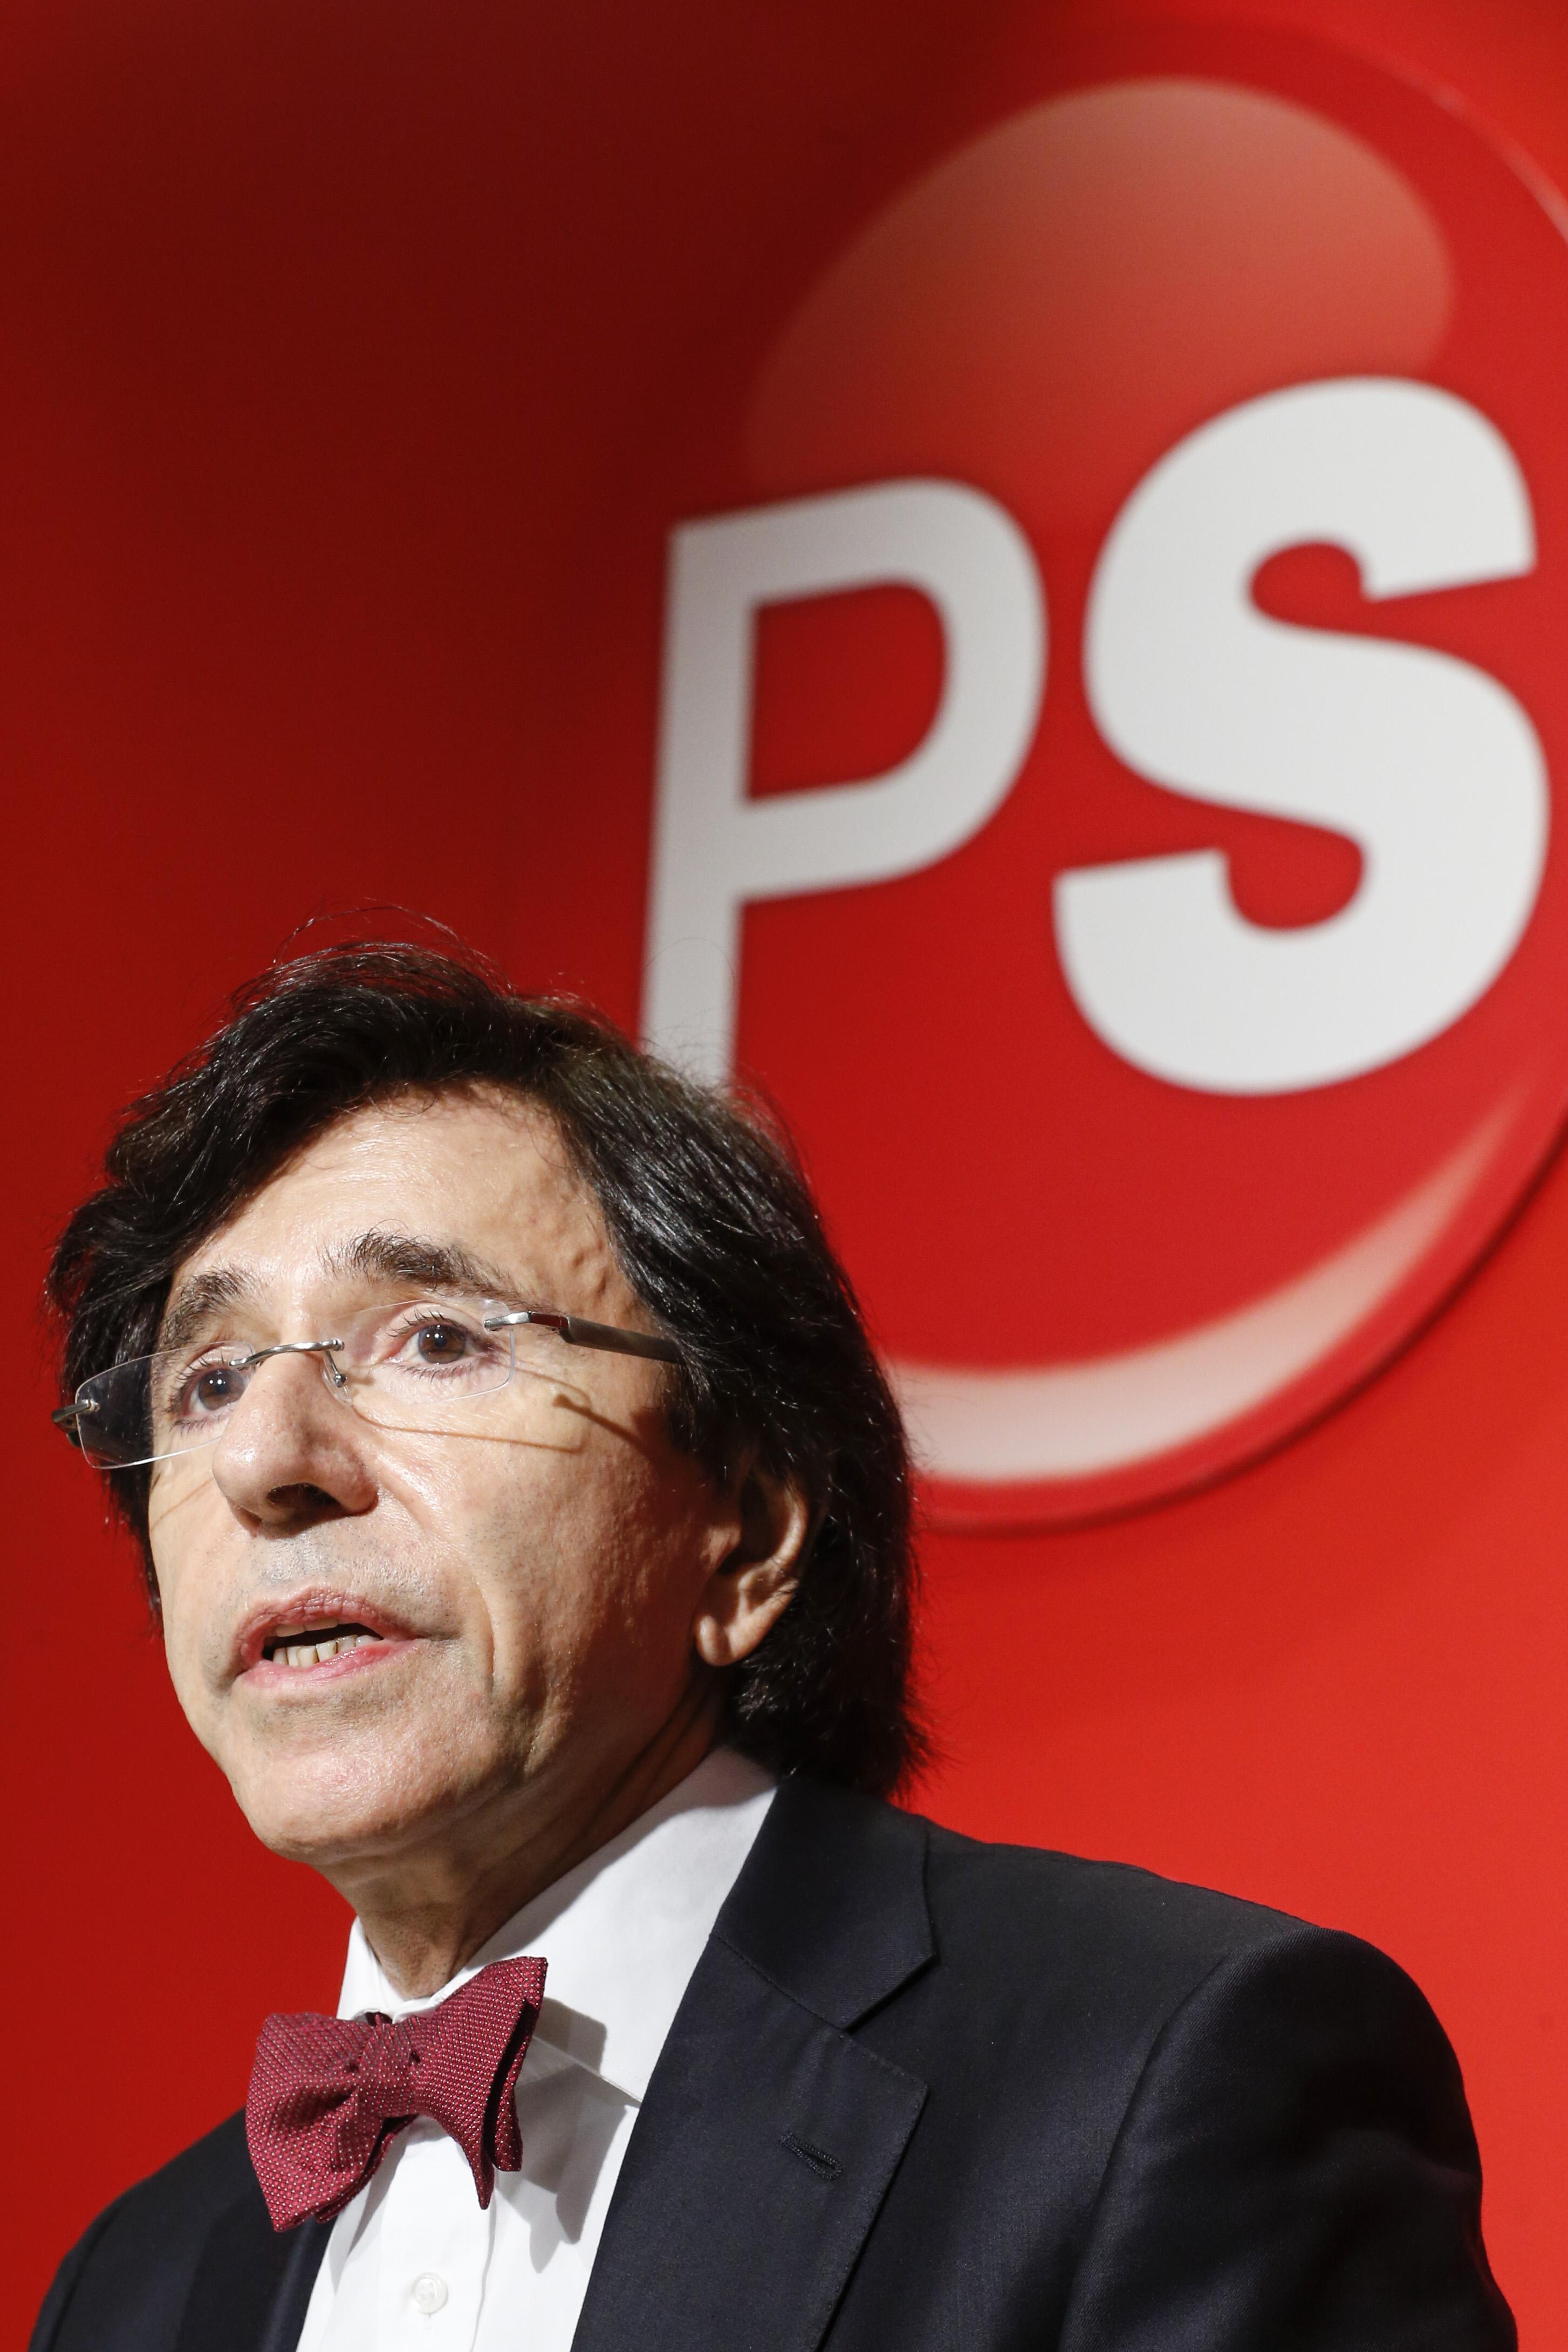 PS-voorzitter Elio Di Rupo: “De wil om evenwichtige akkoorden te sluiten, ontbreekt bij de regeringspartijen. En dat is een heel ernstig probleem.” (foto belga)